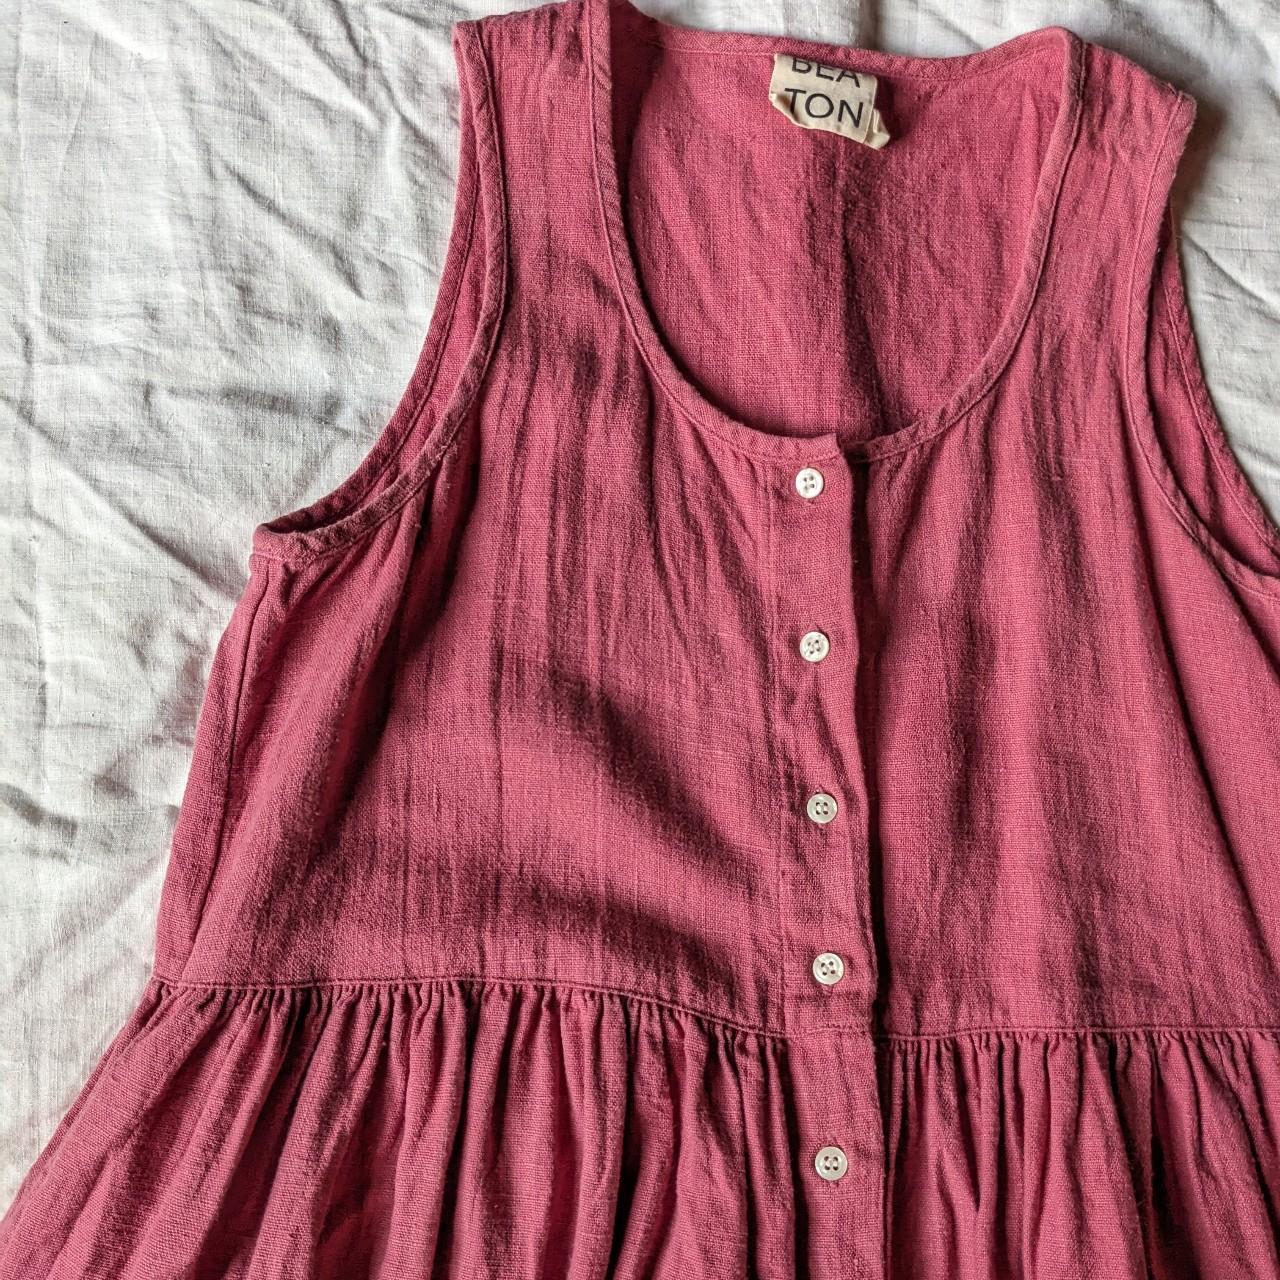 Beaton Women's Pink Dress (4)